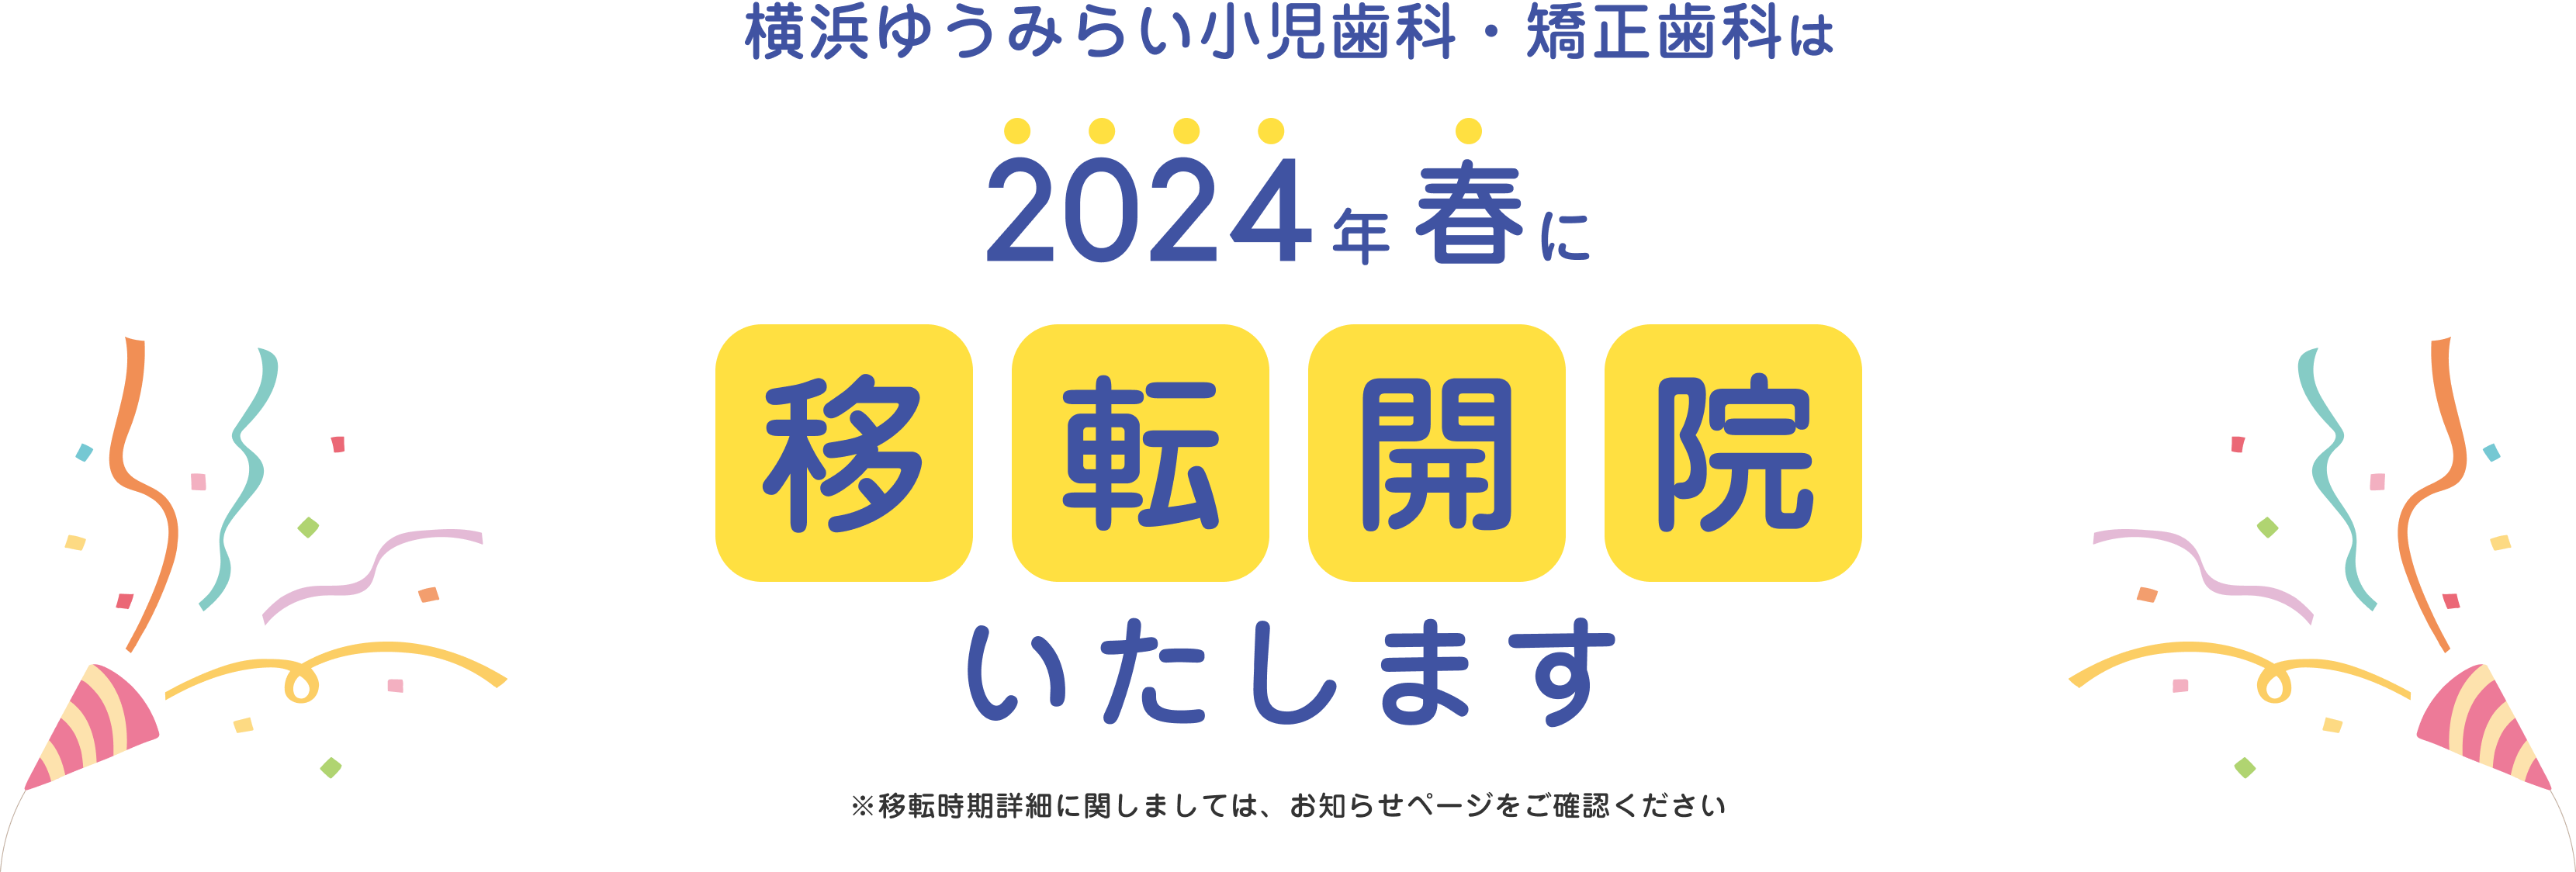 横浜ゆうみらい小児歯科・矯正歯科は2024年春に移転開院いたします